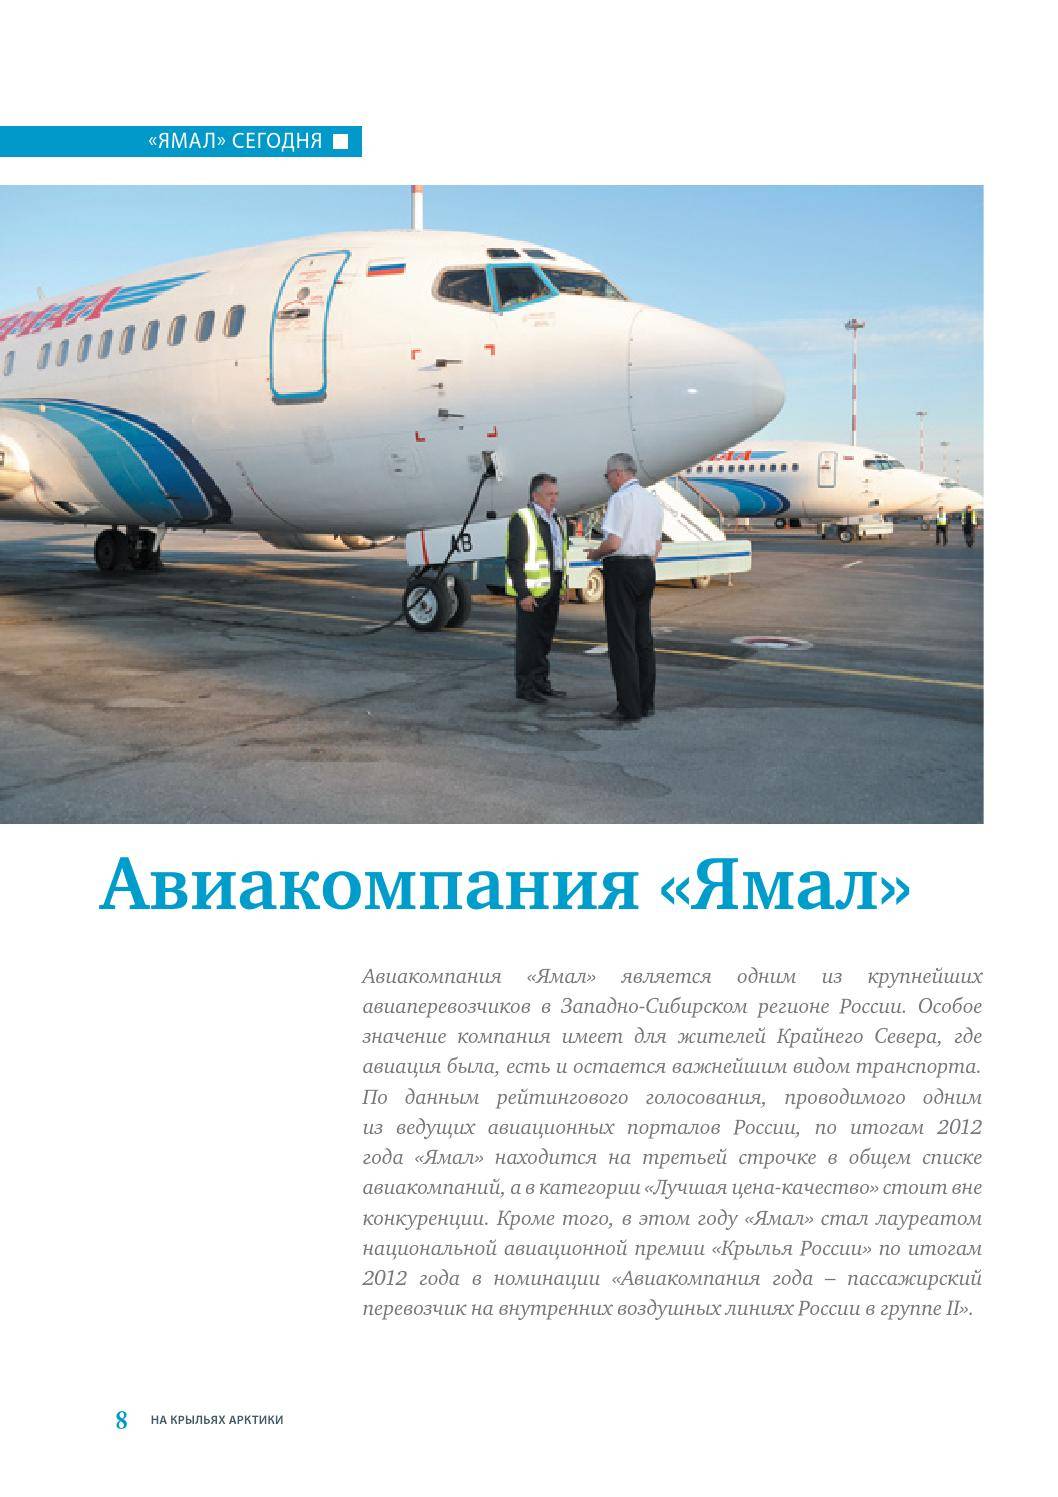 Авиакомпания ямал: регистрация на рейс, парк самолетов, контакты, отзывы